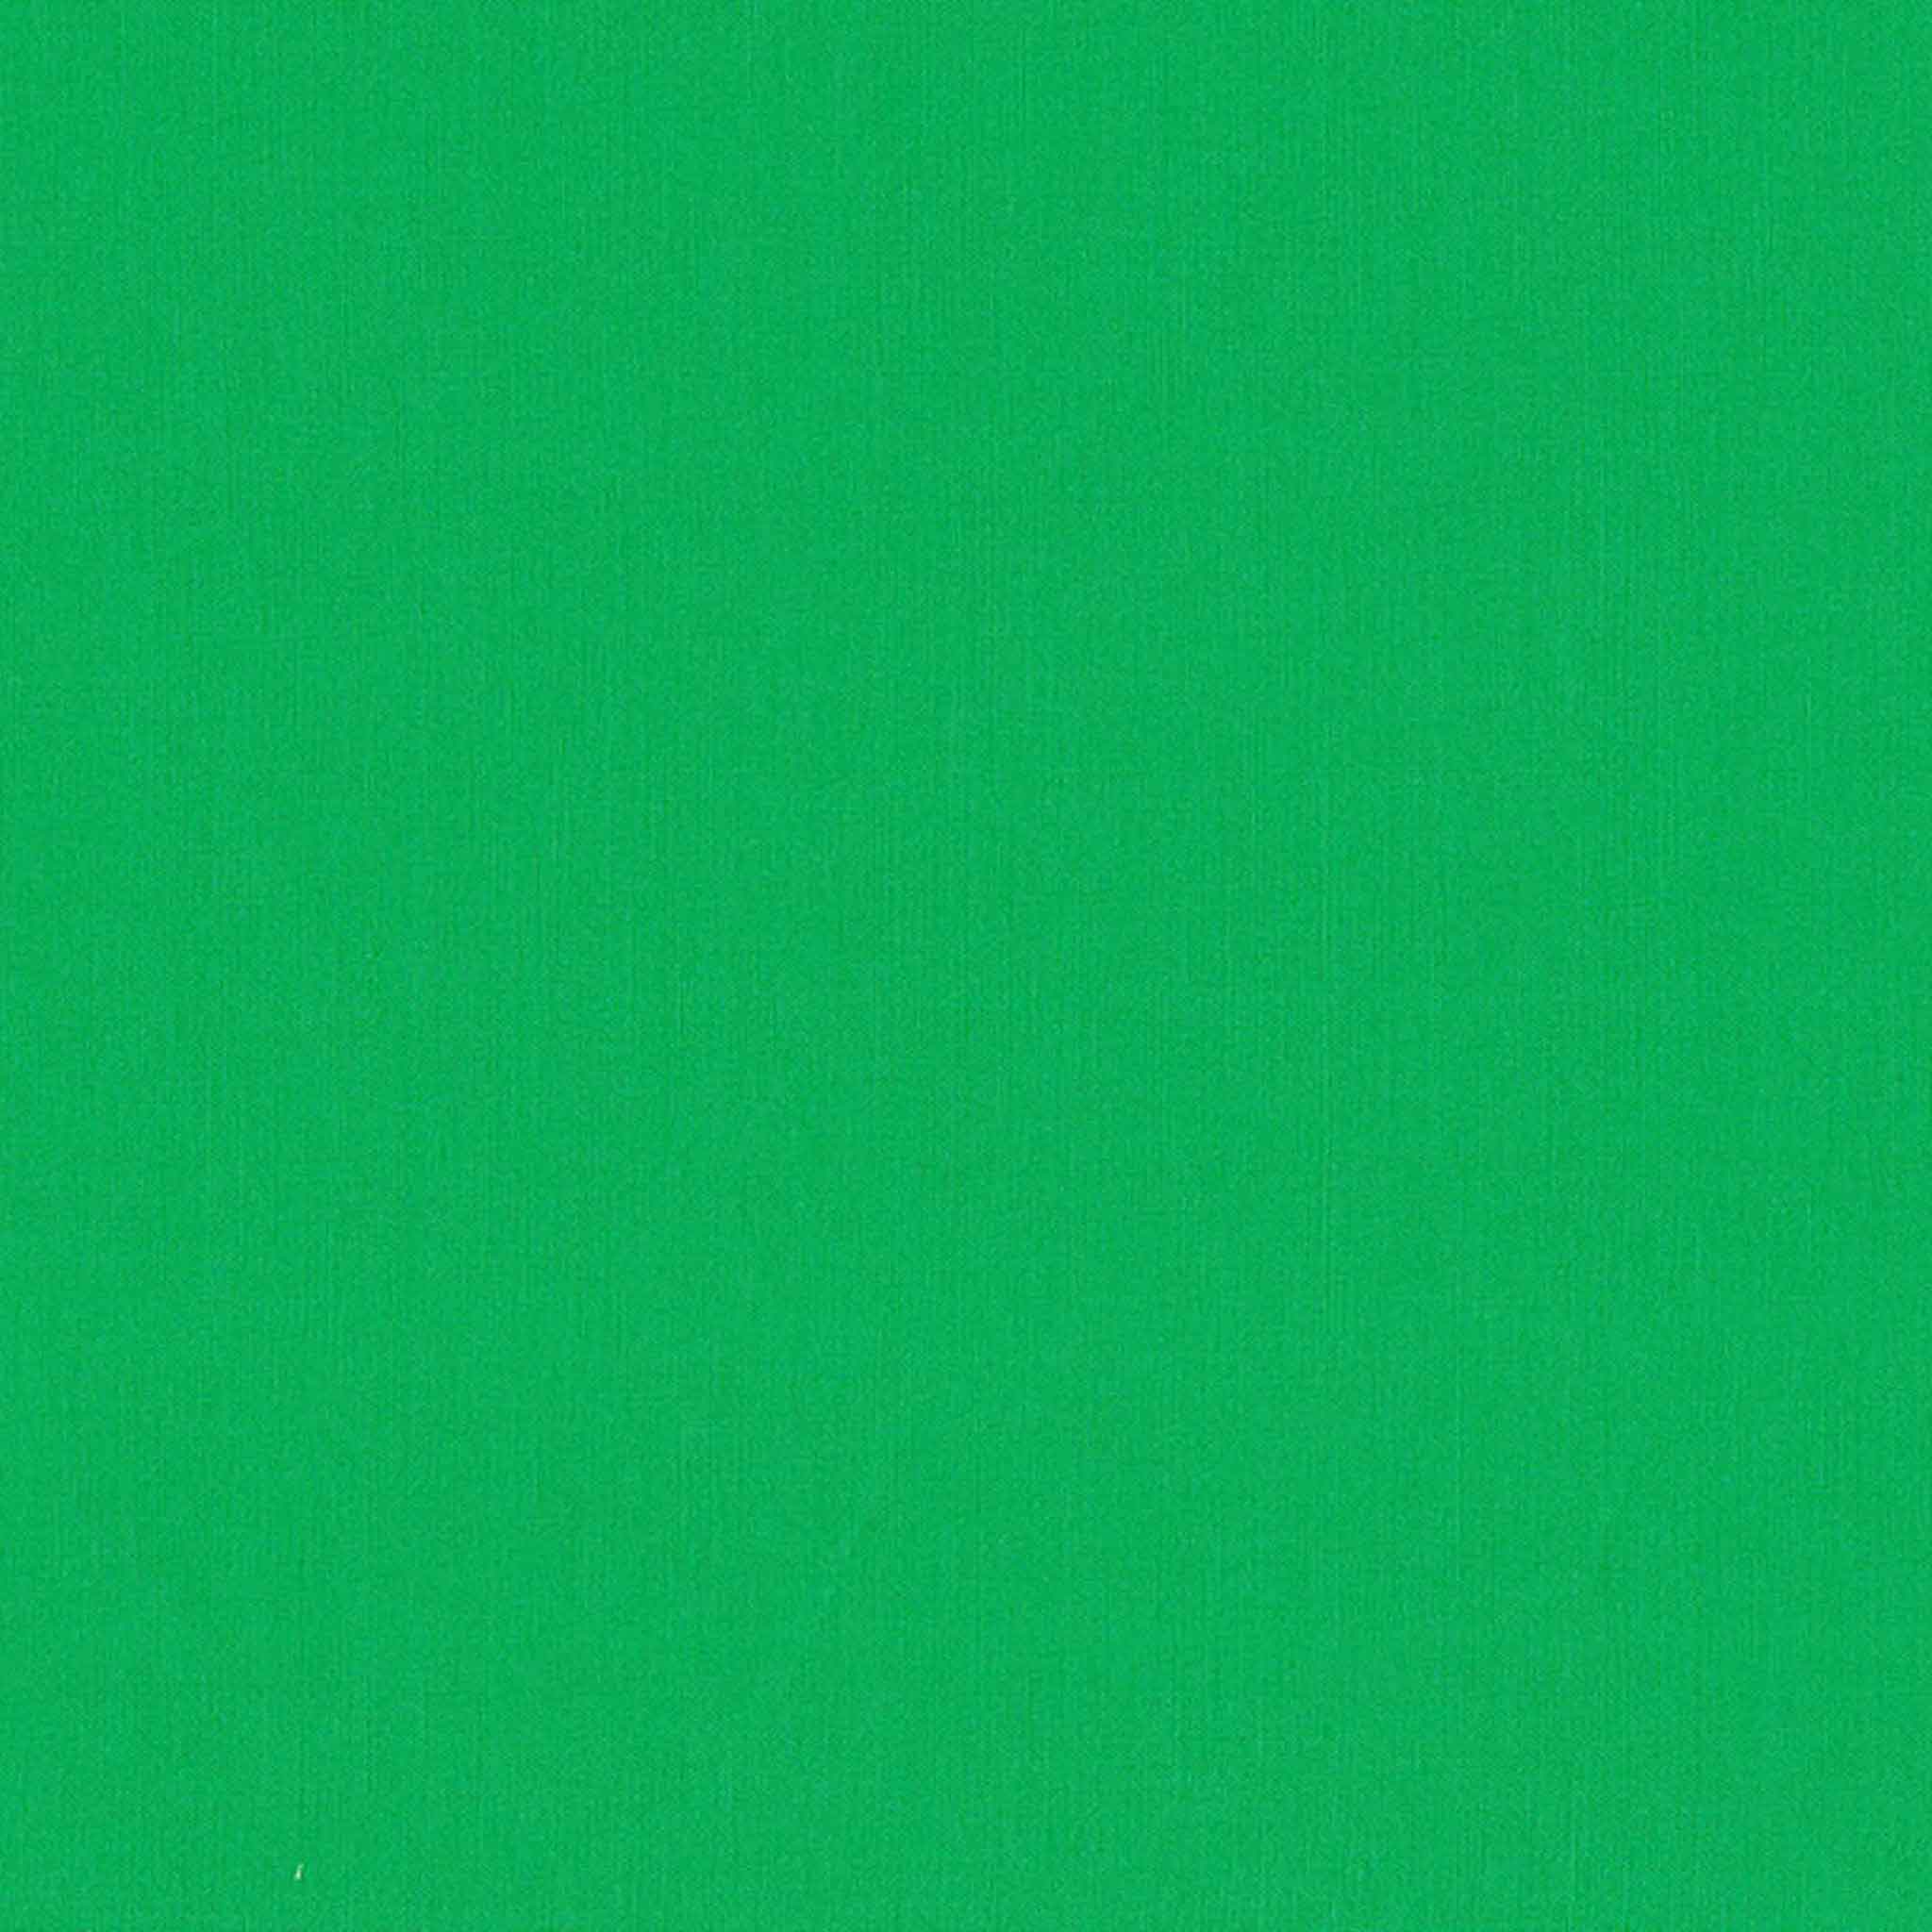 Spectrum Plain - Emerald Green Cotton Fabric - Makower 2000/Q46